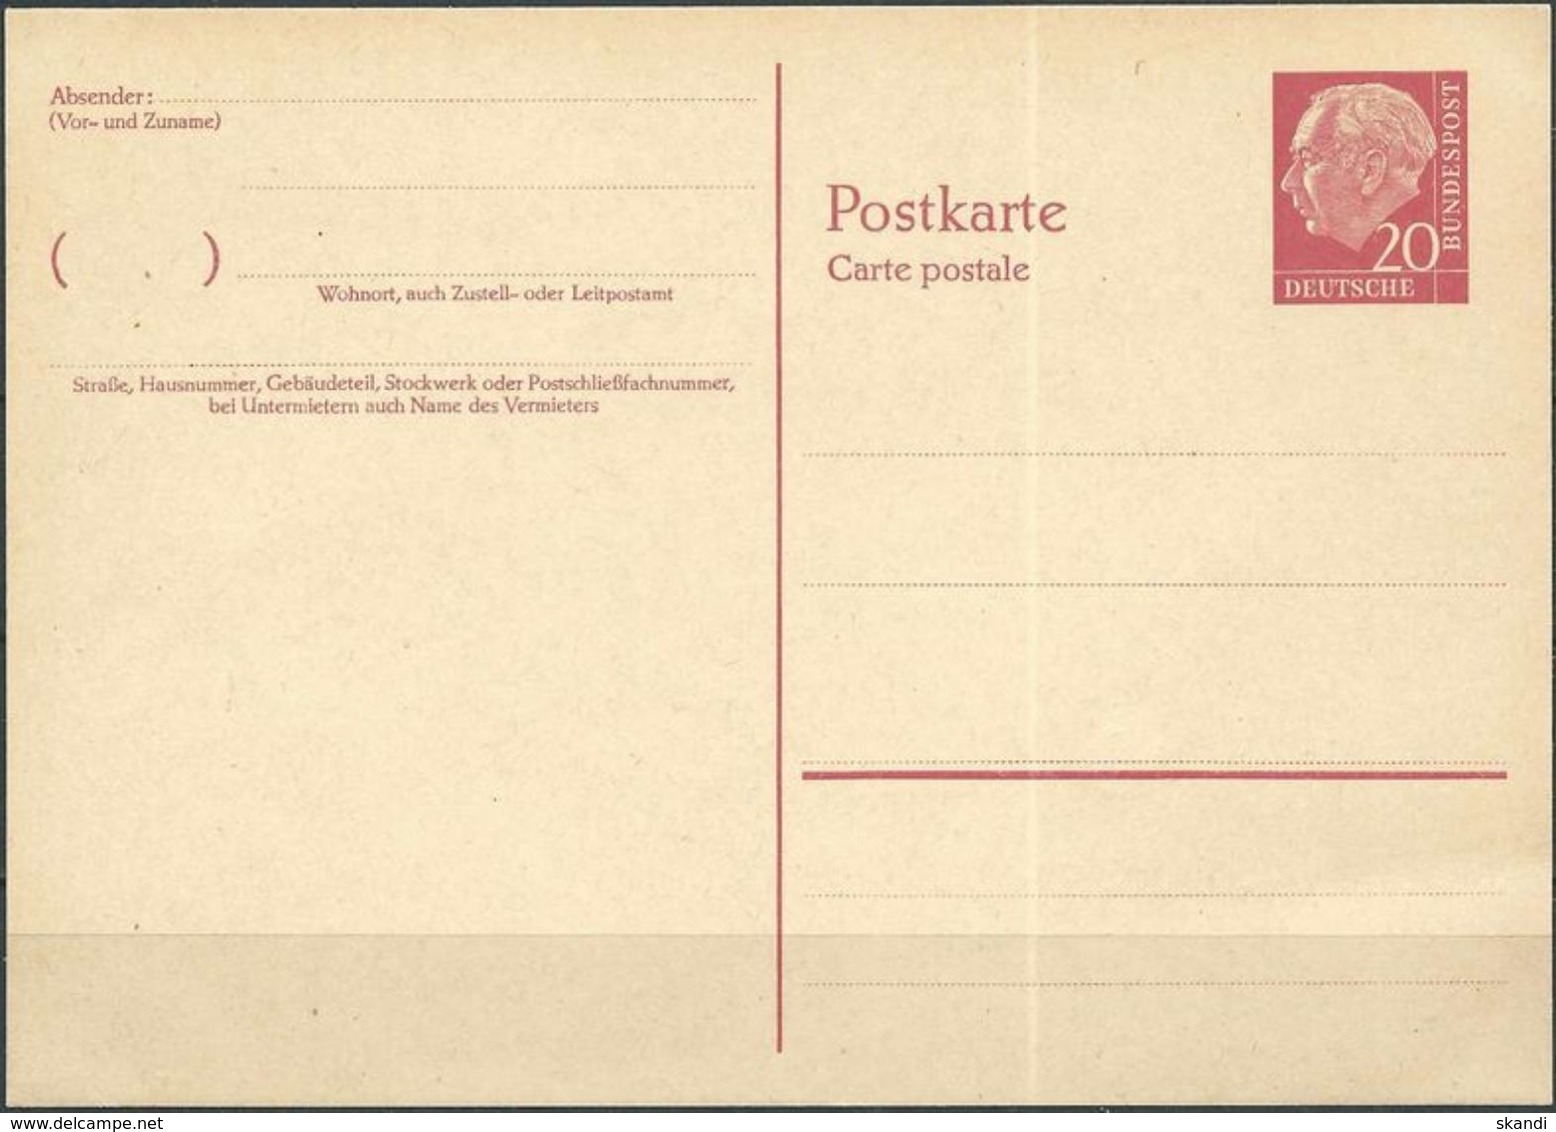 DEUTSCHLAND 1957 Mi-Nr. P 32 Postkarte Ungelaufen Siehe Scan - Postkarten - Ungebraucht